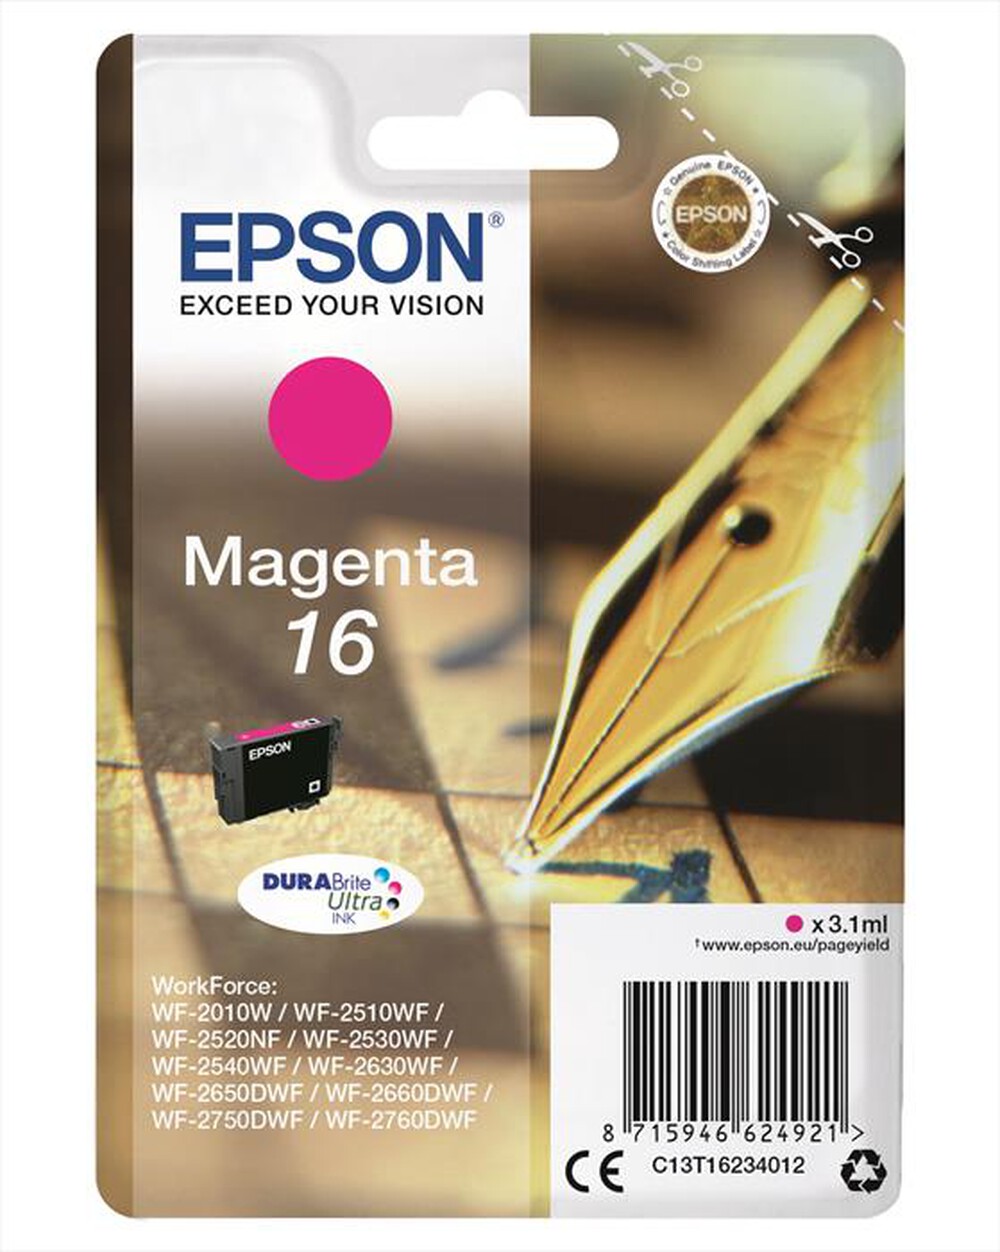 "EPSON - C13T16234022 - Magenta"